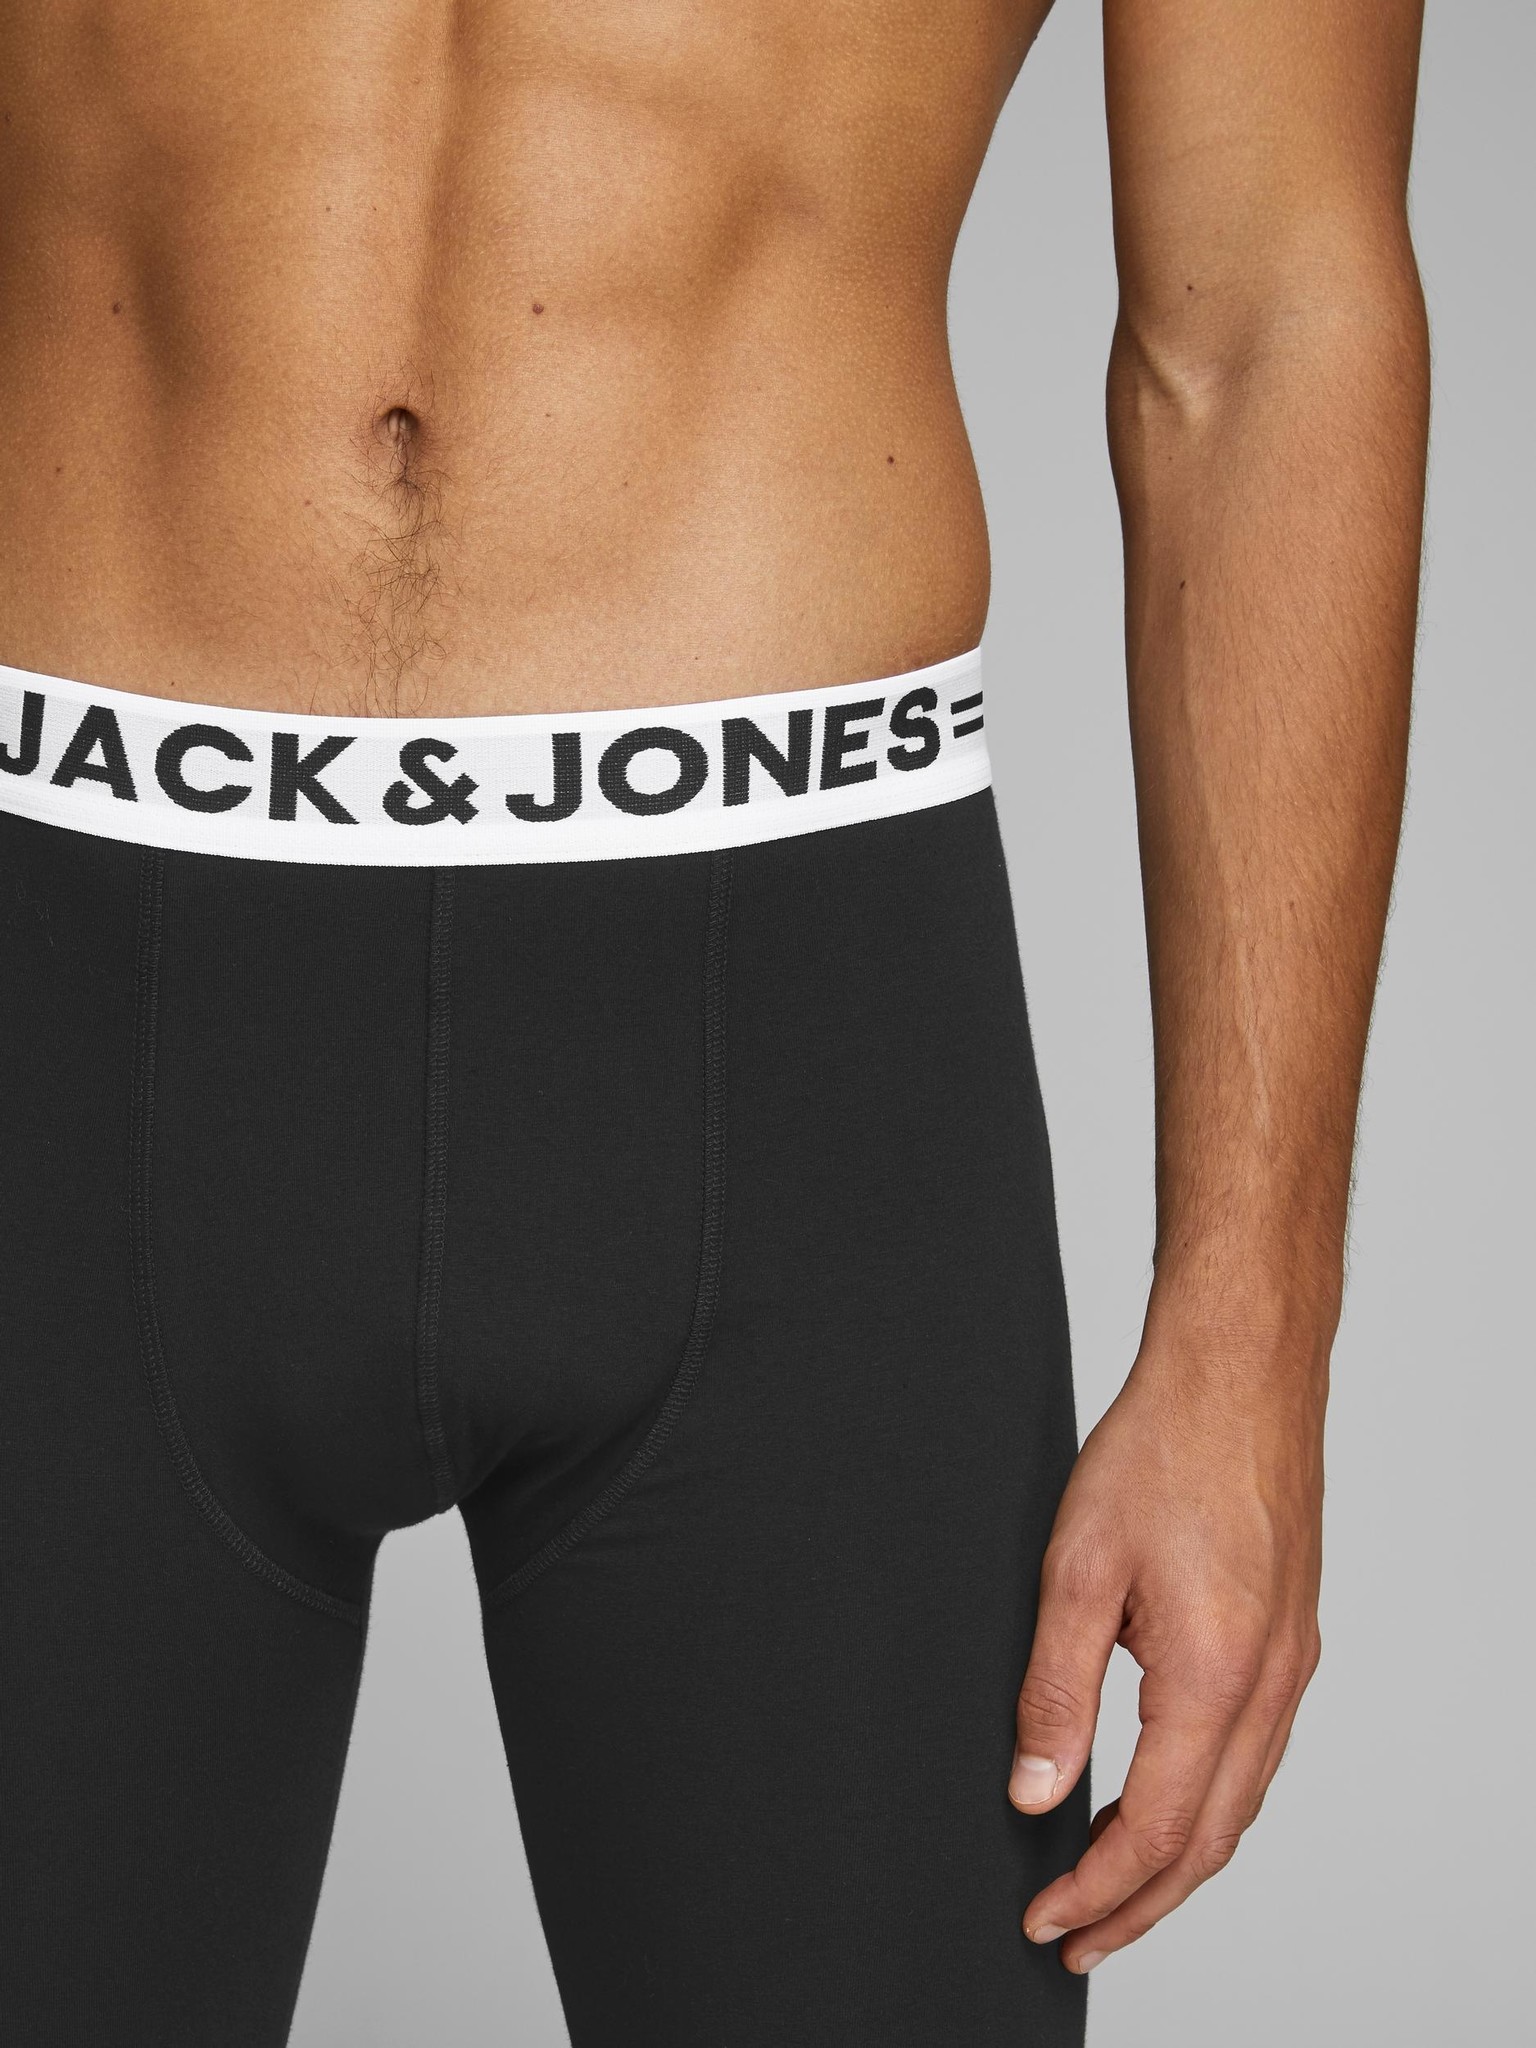 Bloemlezing Briljant Humoristisch Jack & Jones Lange Onderbroek JACSOLID Long Johns Zwart | Underwear District